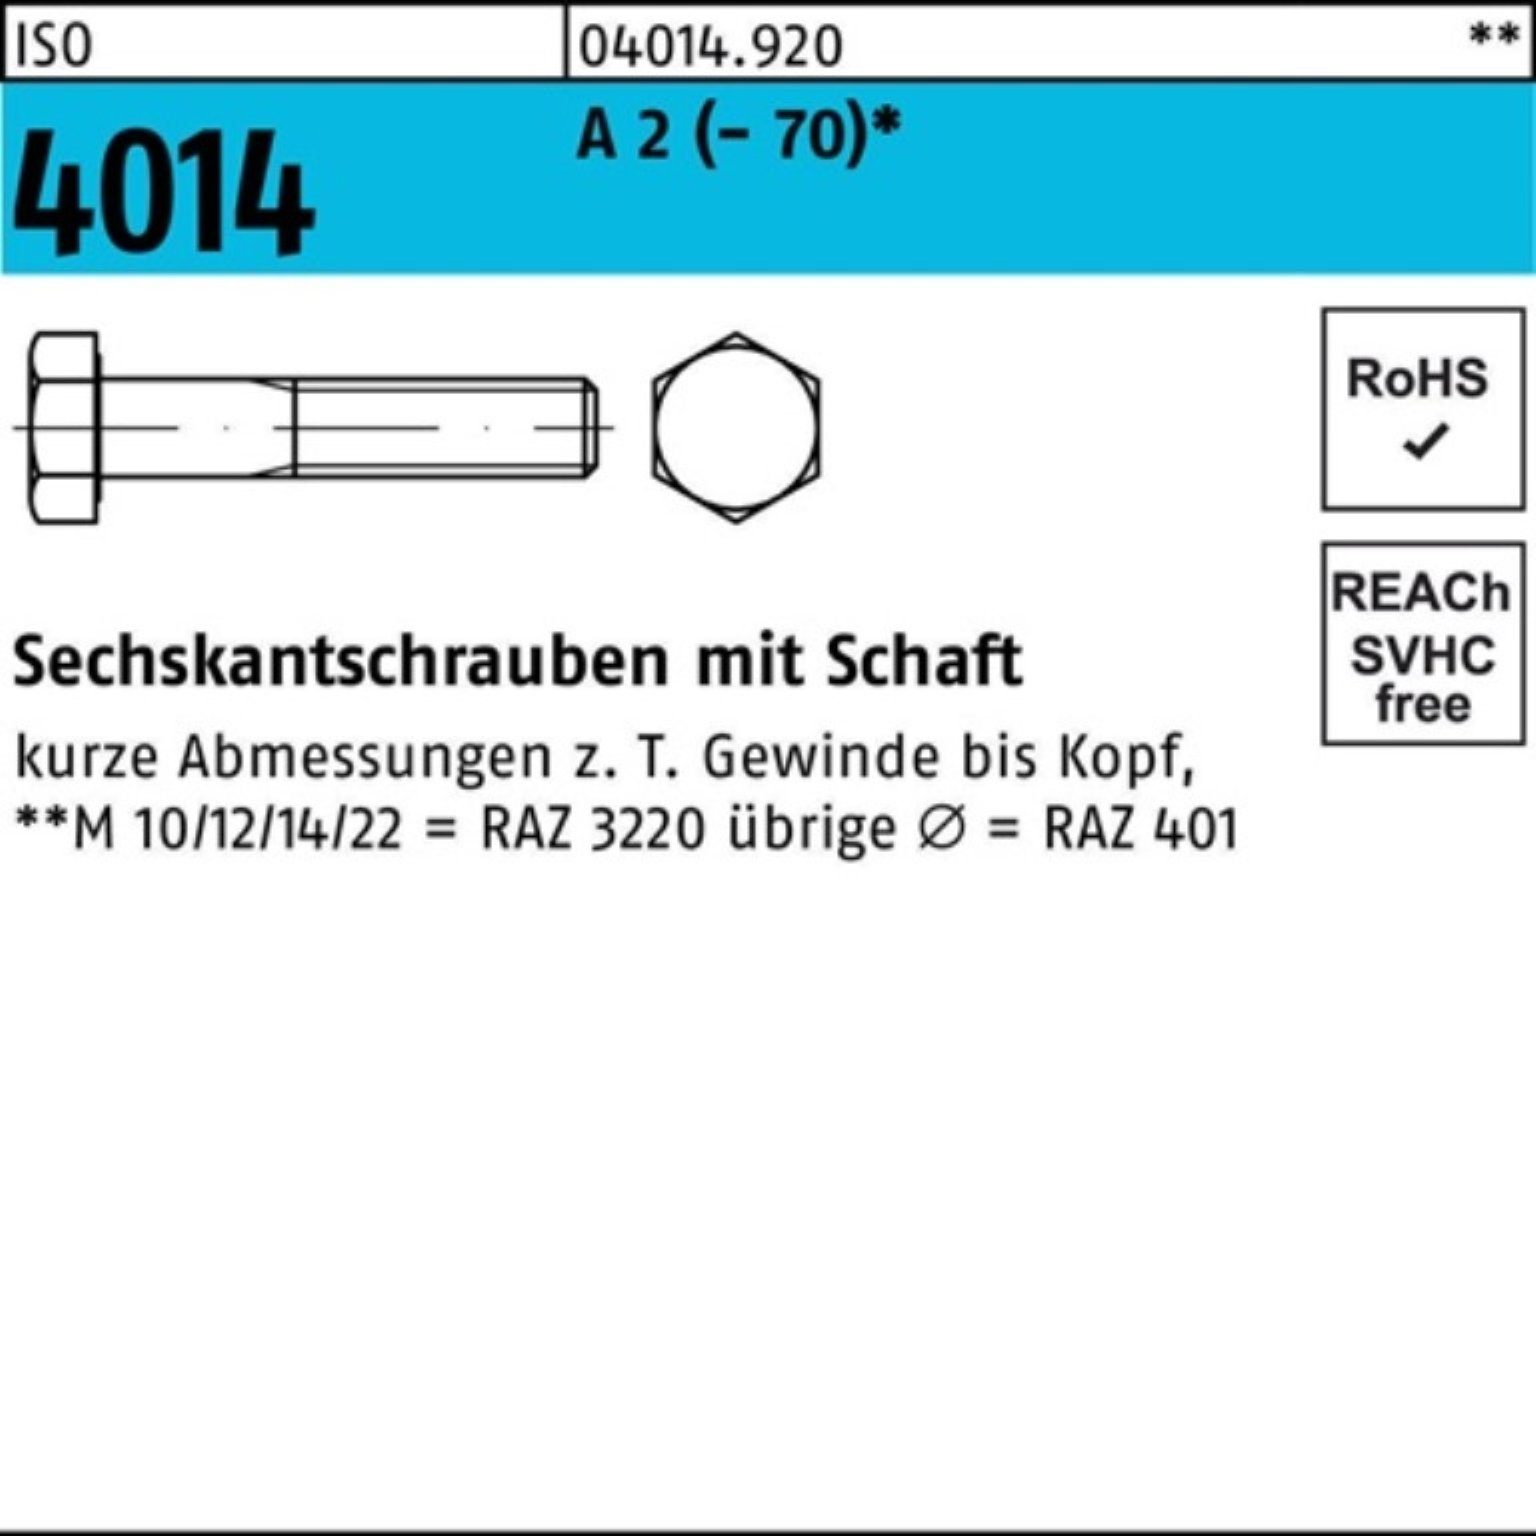 Bufab Sechskantschraube 100er Pack Sechskantschraube ISO 4014 Schaft M12x 130 A 2 (70) 1 St